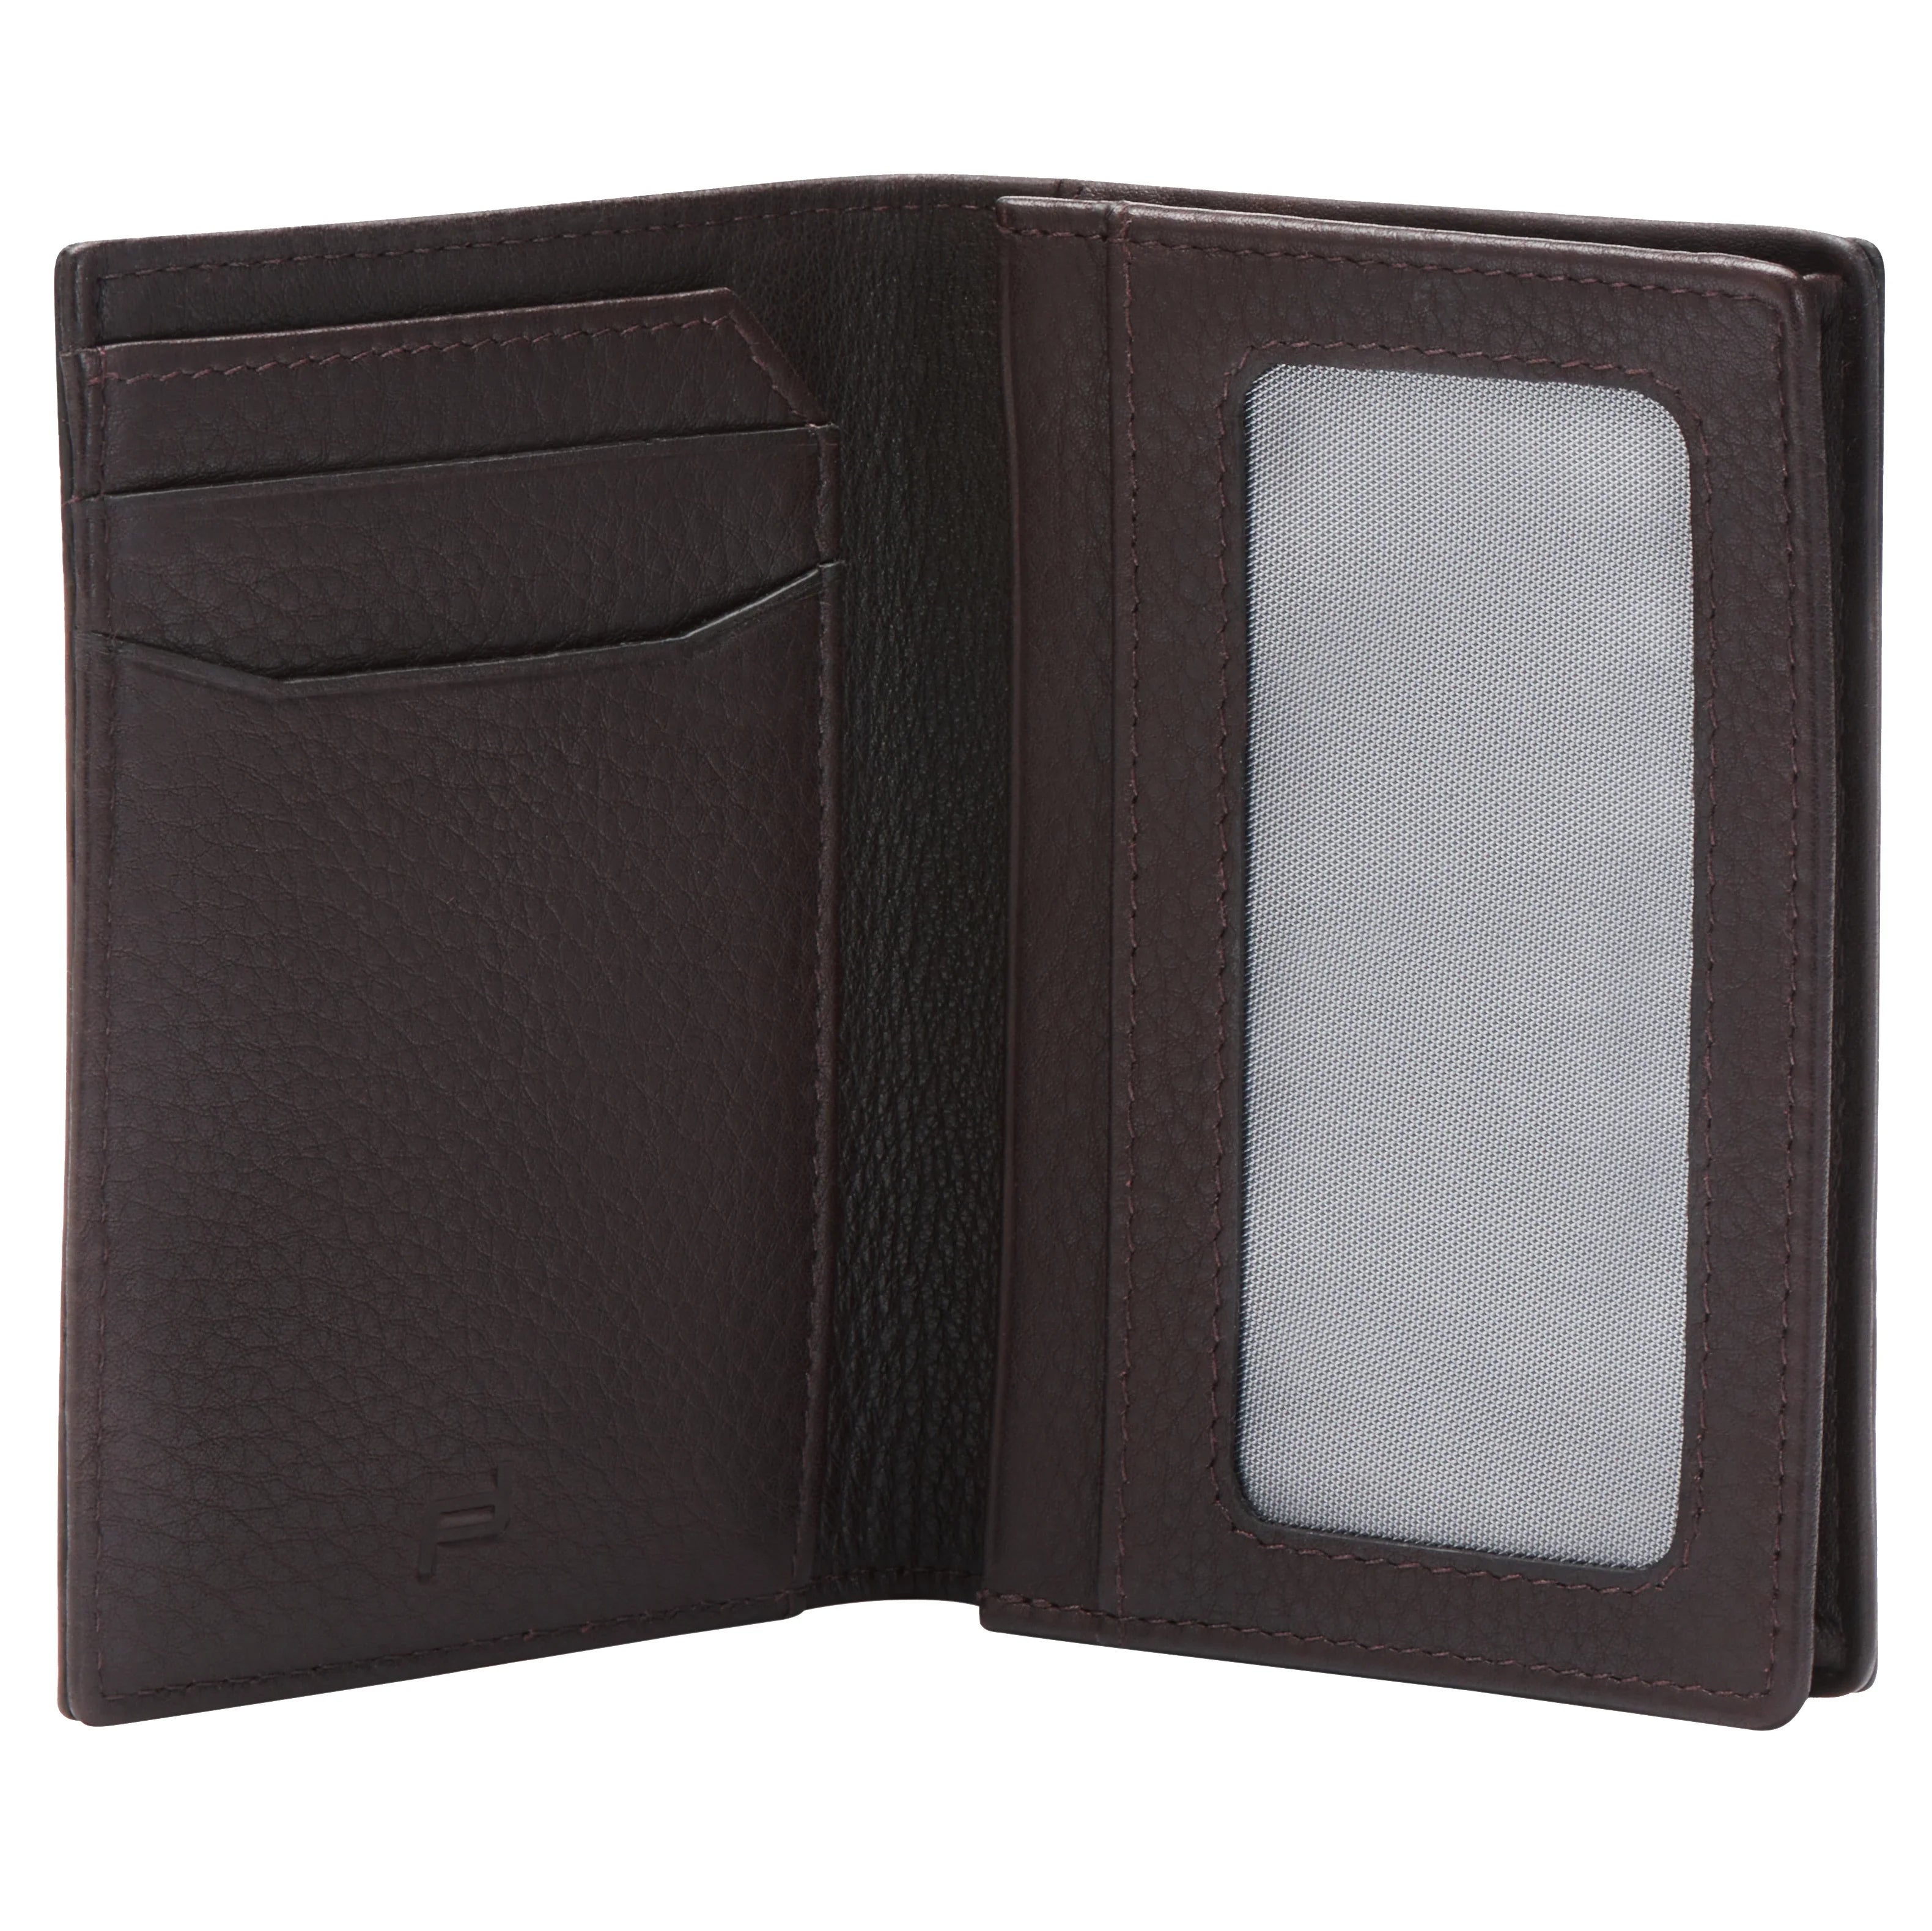 Porsche Design Accessories Business Cardholder 2 RFID 11 cm - Dark Brown